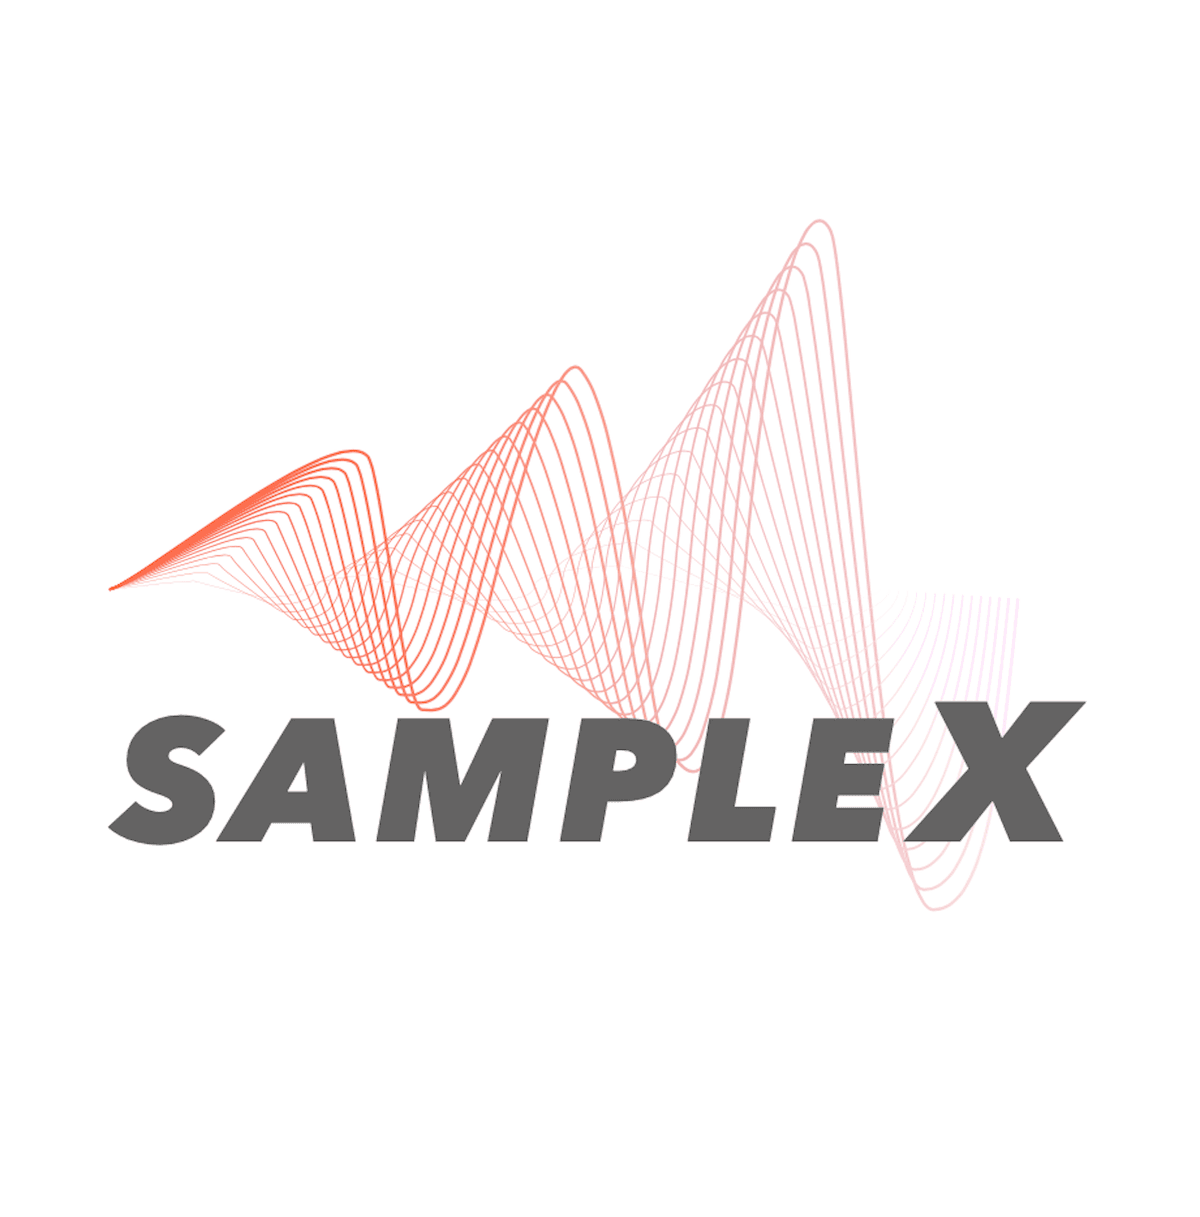 Sample_X bannière